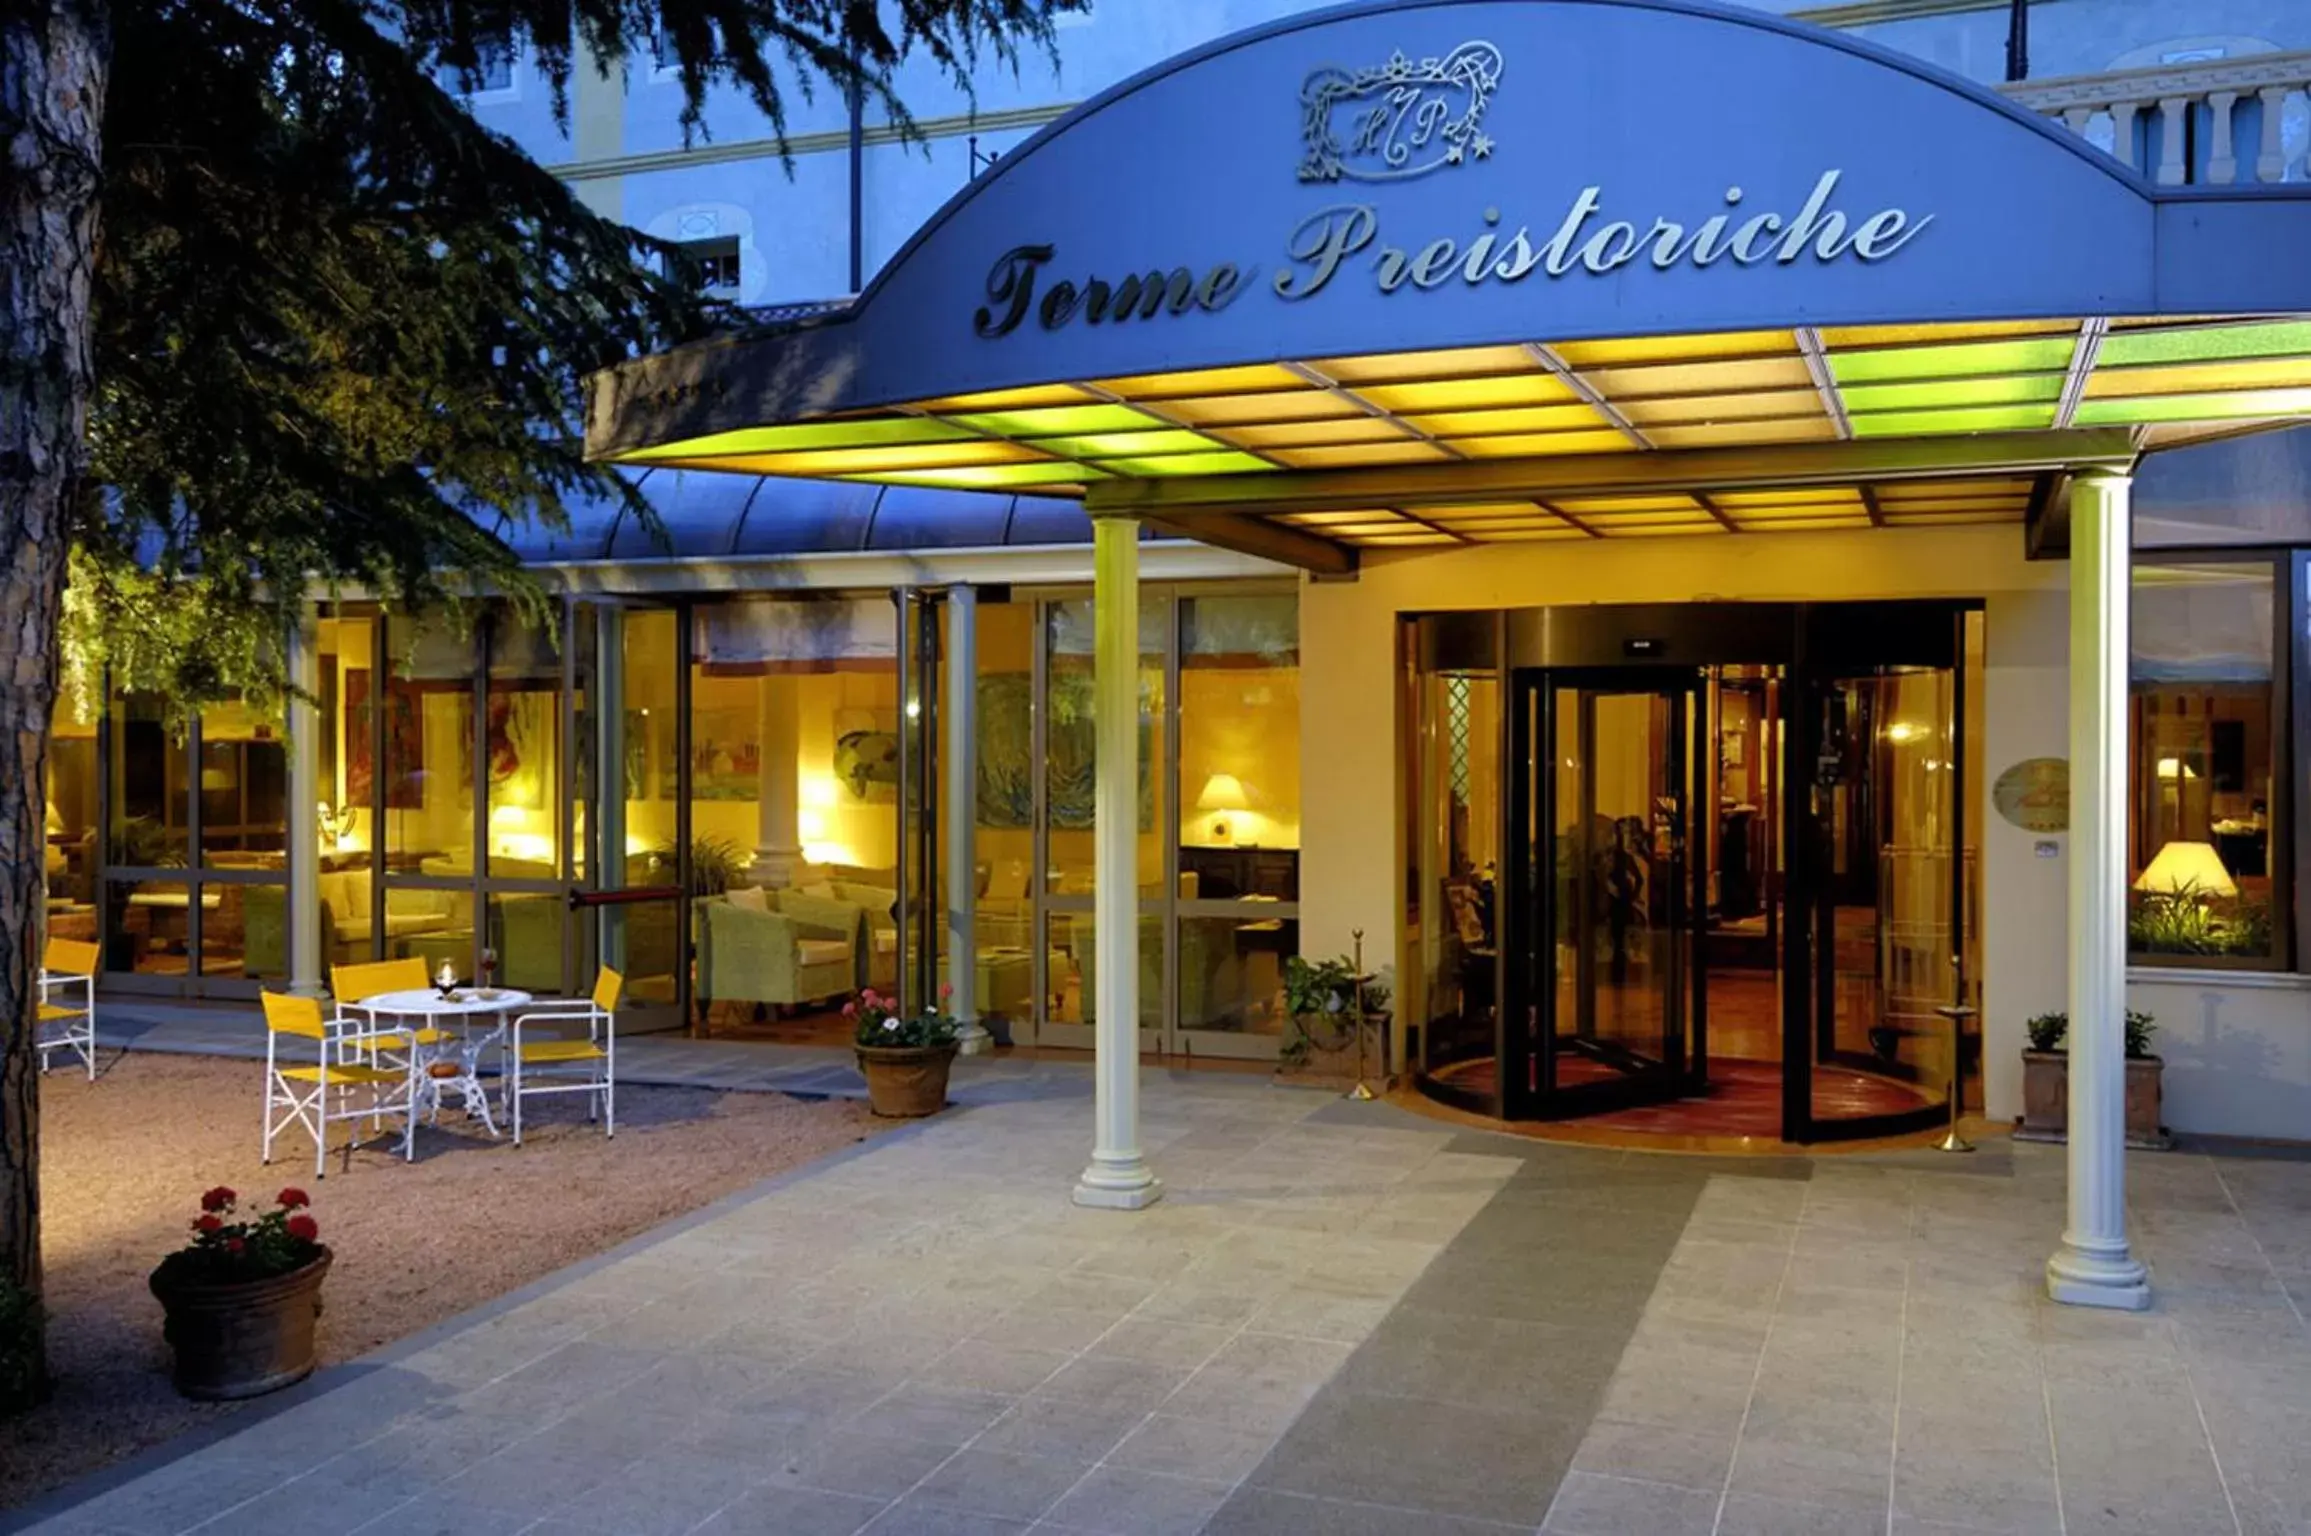 Facade/entrance in Terme Preistoriche Resort & Spa